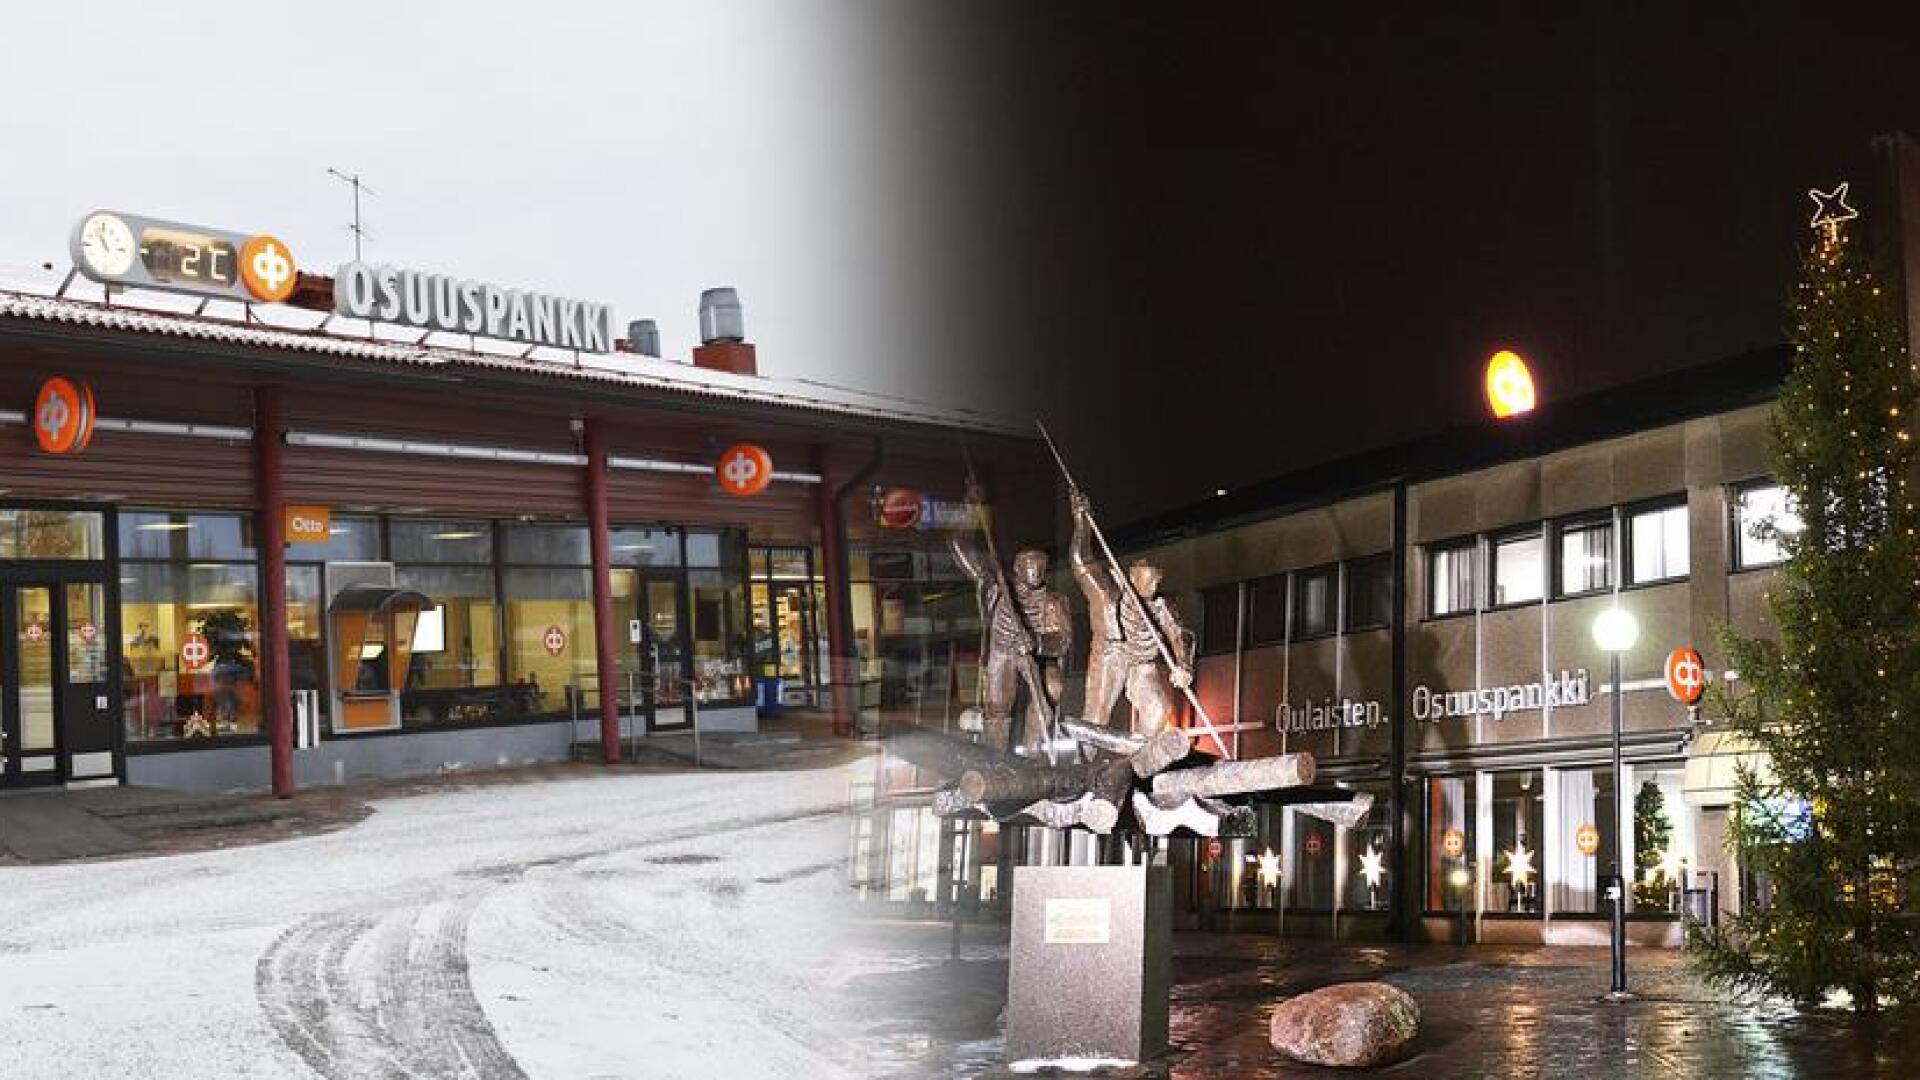 Suomenselän Osuuspankki ja Oulaisten Osuuspankki ovat yhdistymässä ensi syksynä. Uuden pankin nimeksi on tulossa Suomenselän Osuuspankki.